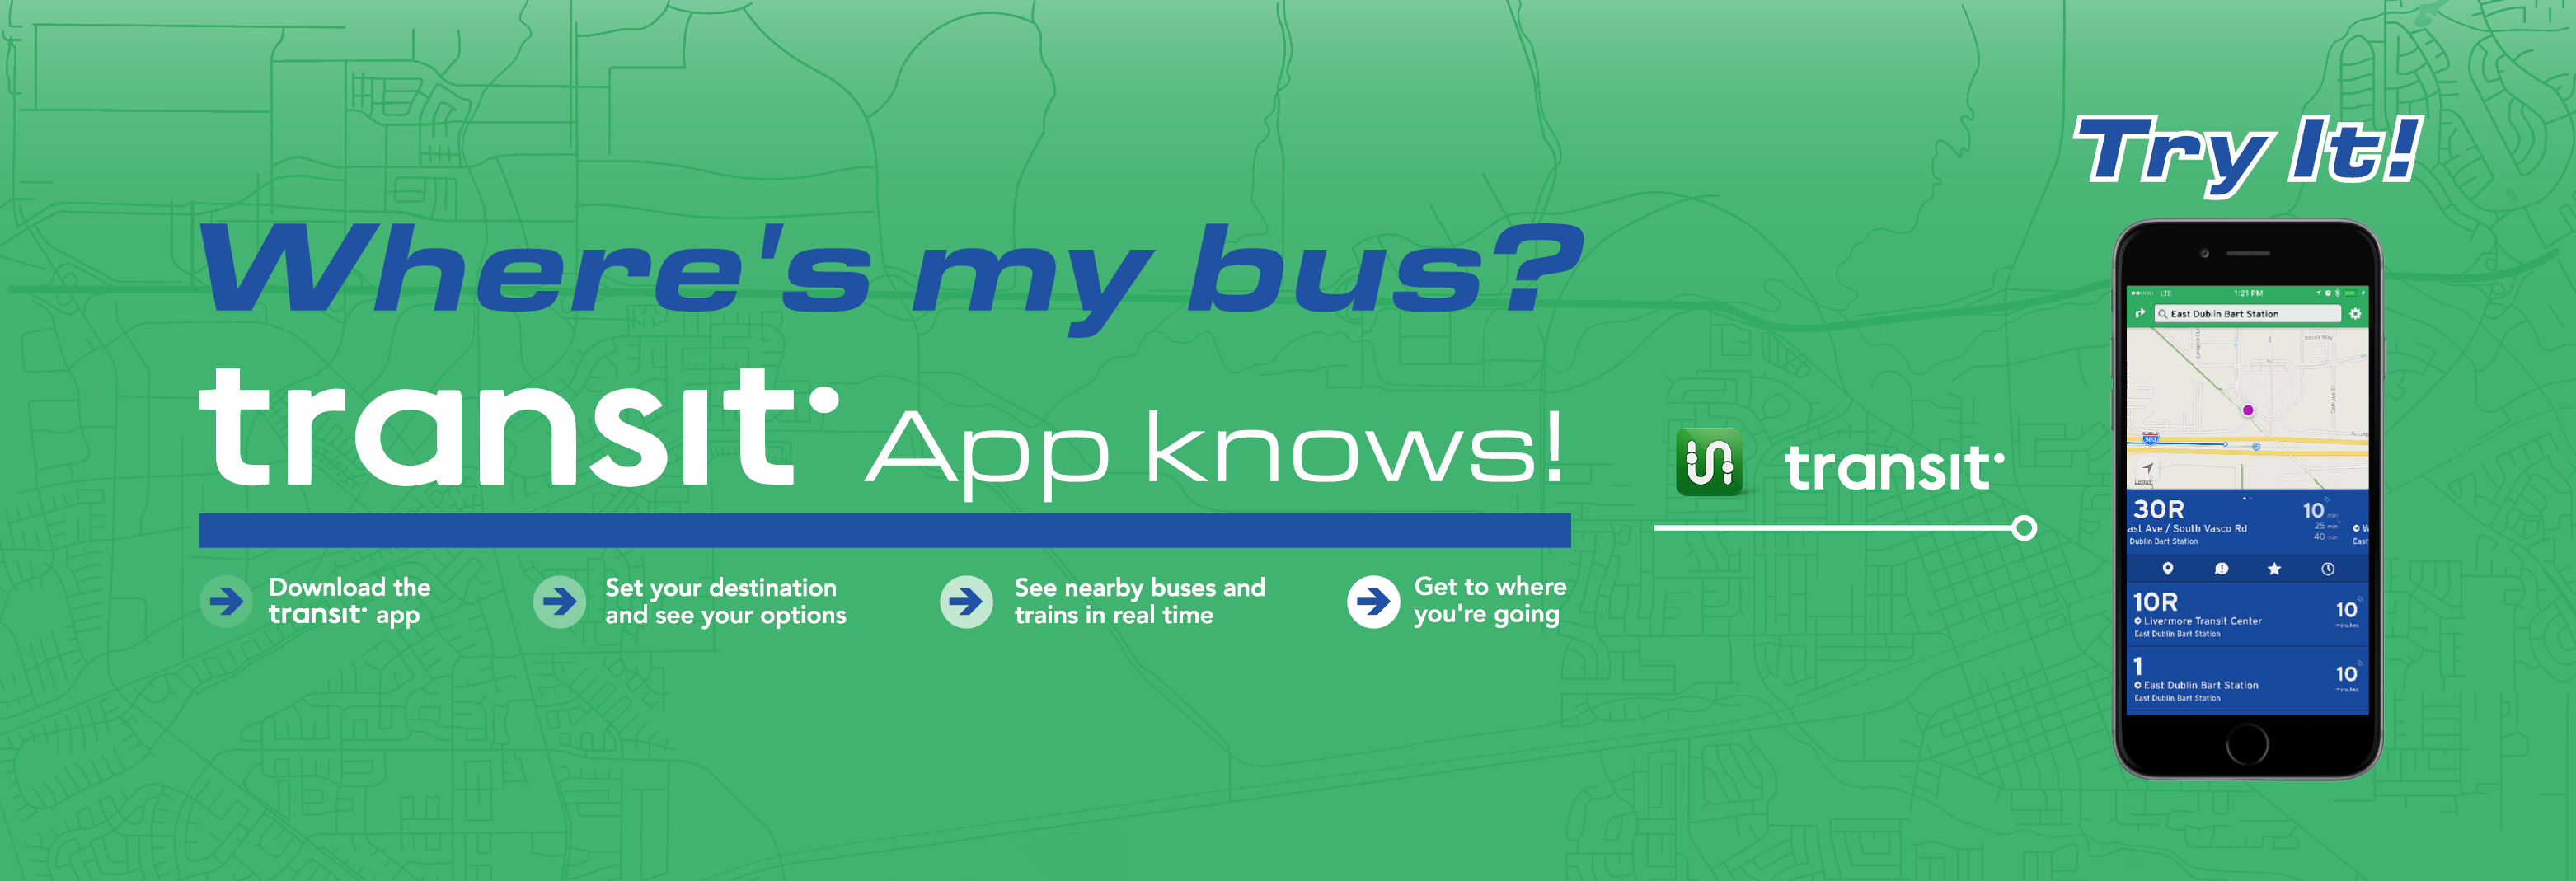 Transit App Poster